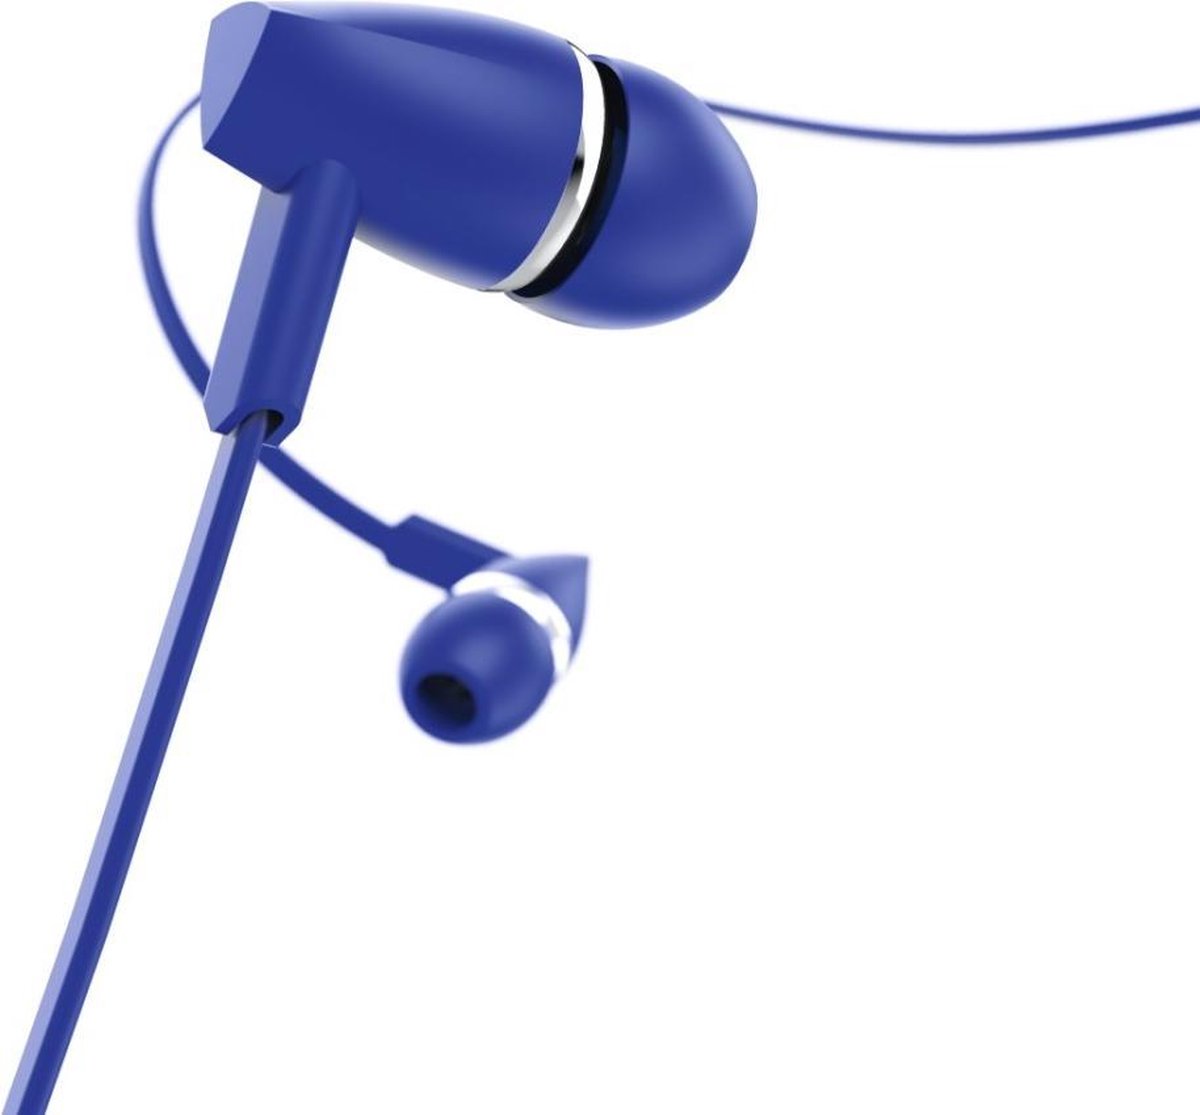 Hama In-ear-stereo-headset Joy Blauw